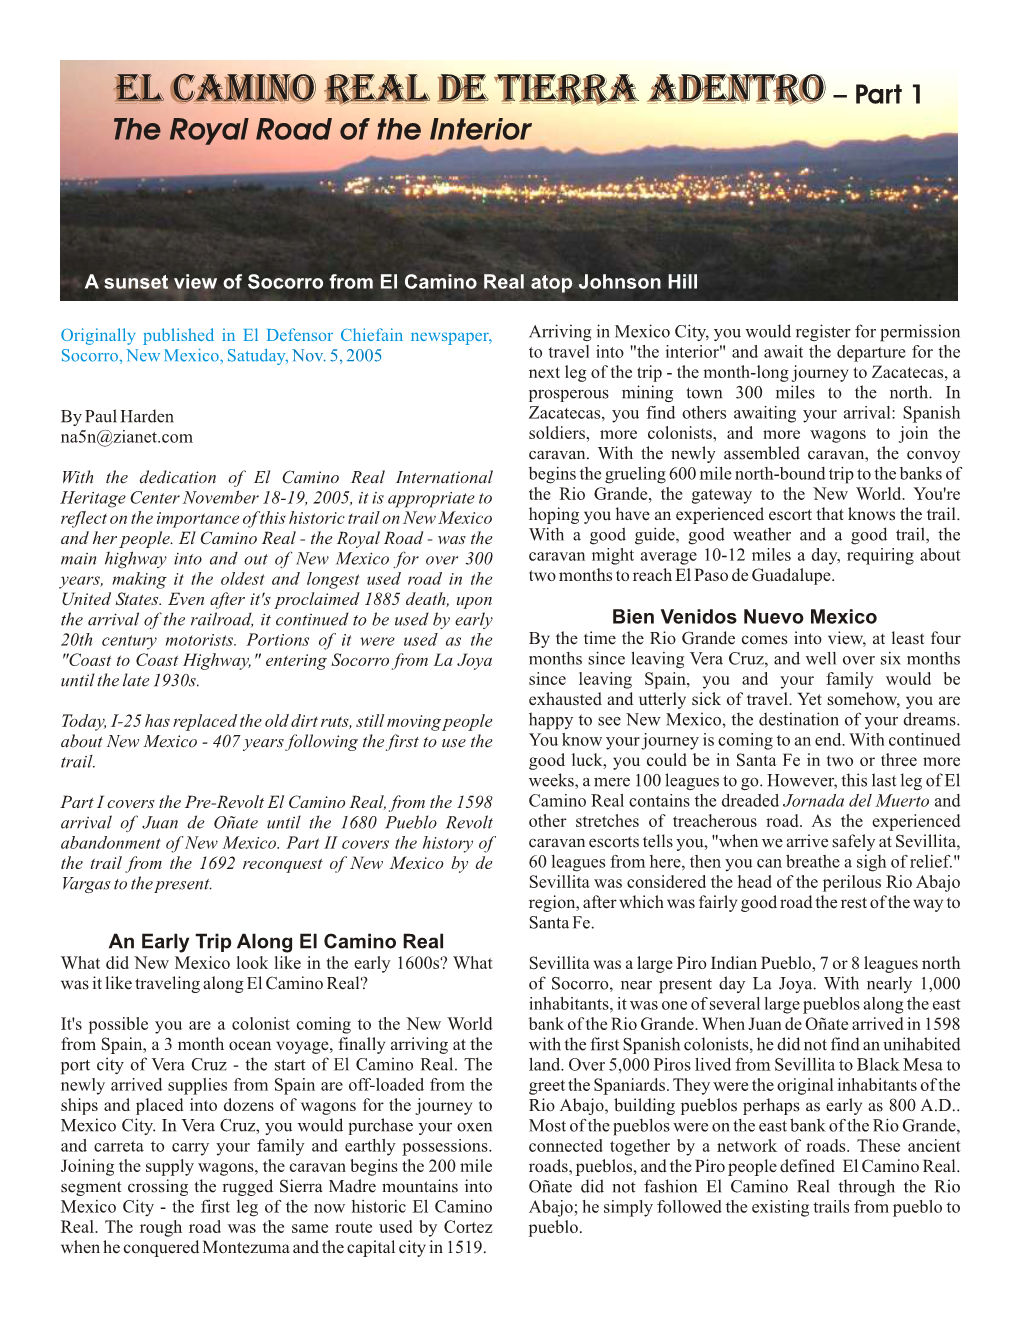 El Camino Real De Tierra Adentro – Part I Page 2